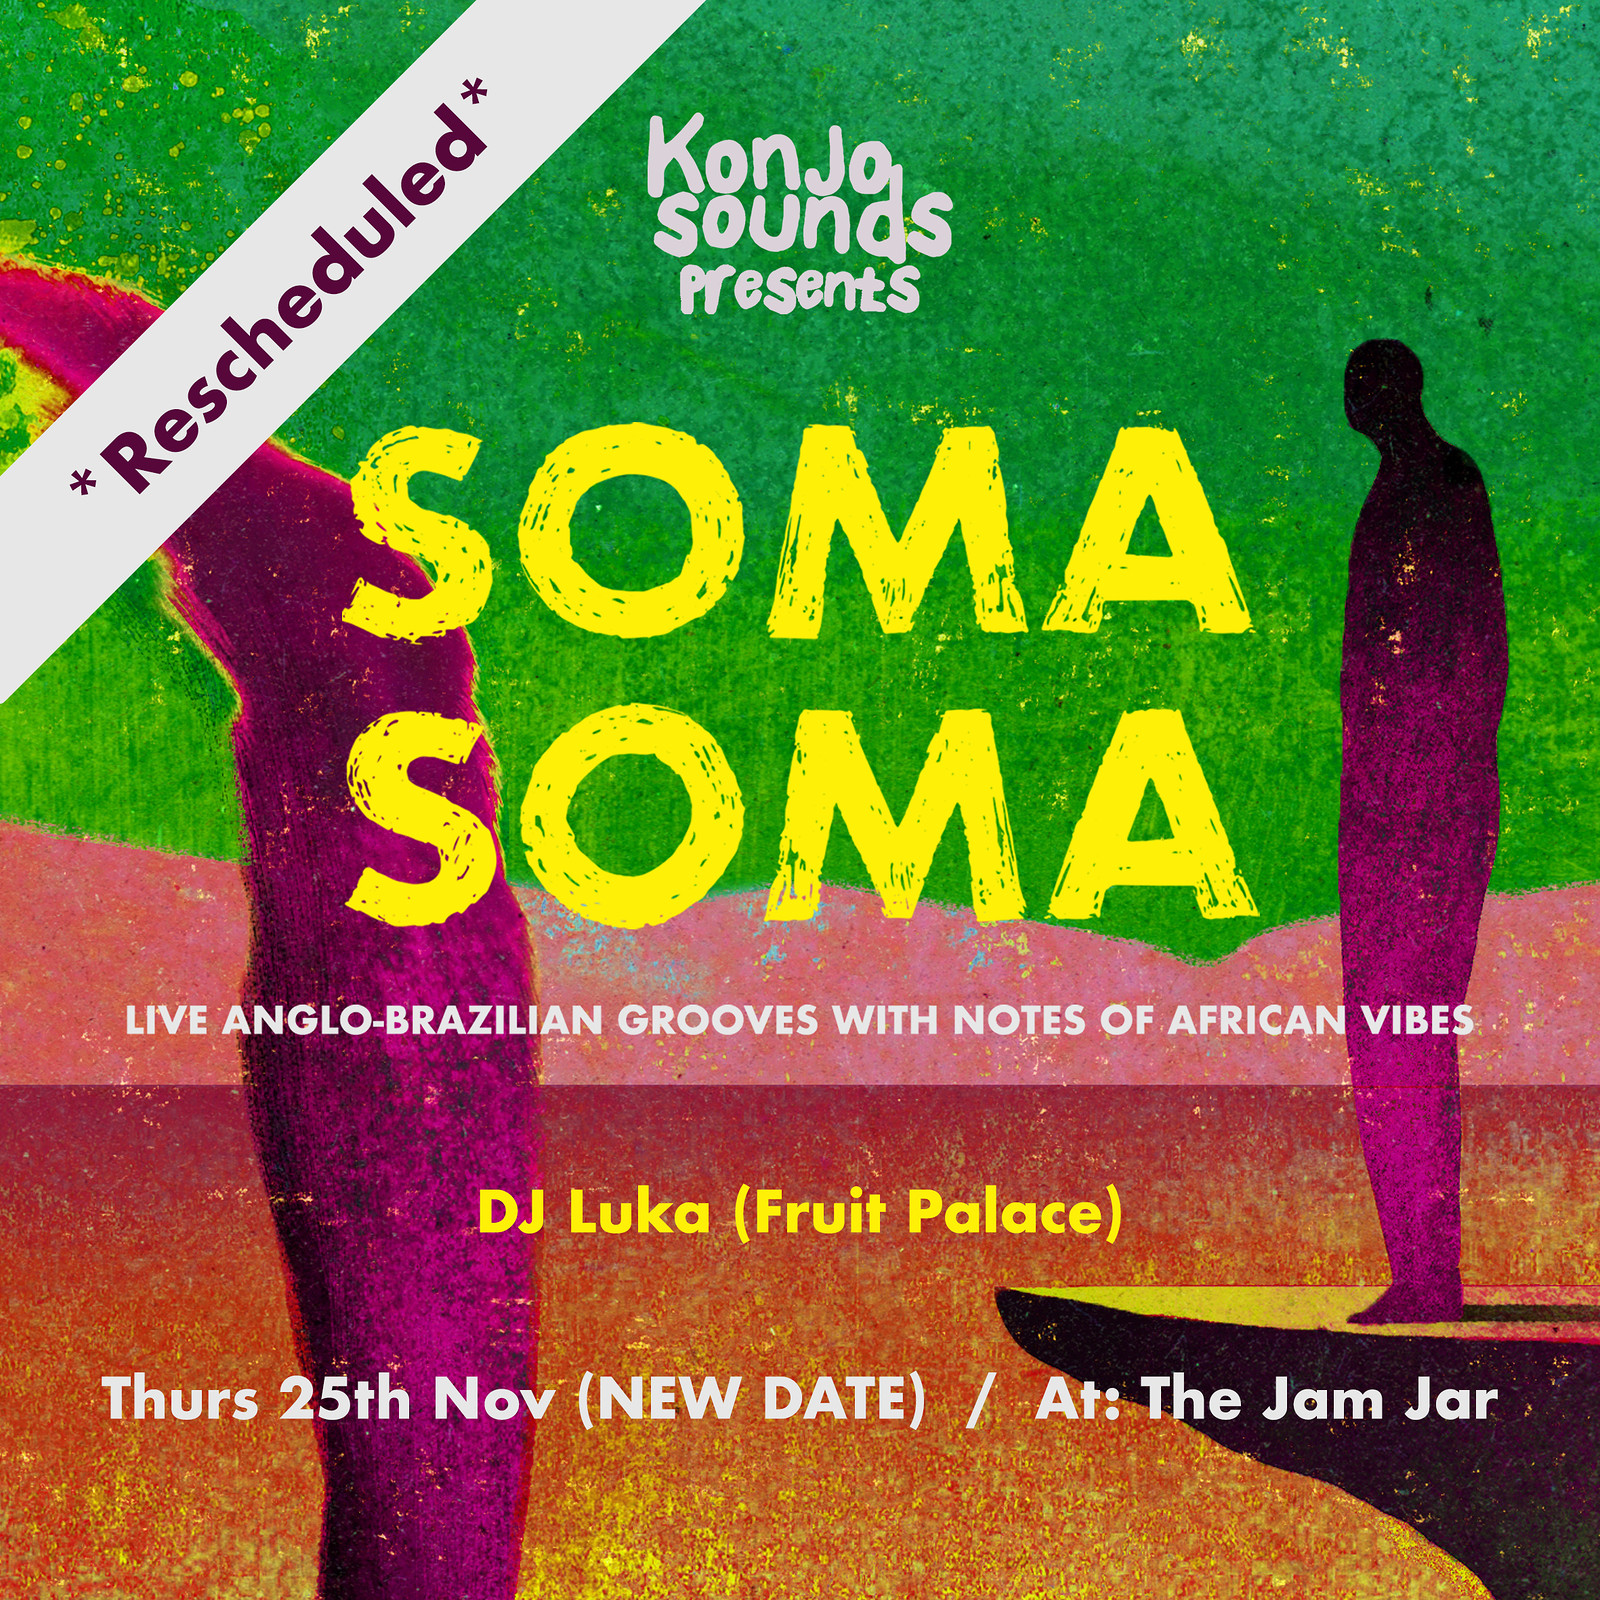 Konjo Sounds presents.... Soma Soma at Jam Jar